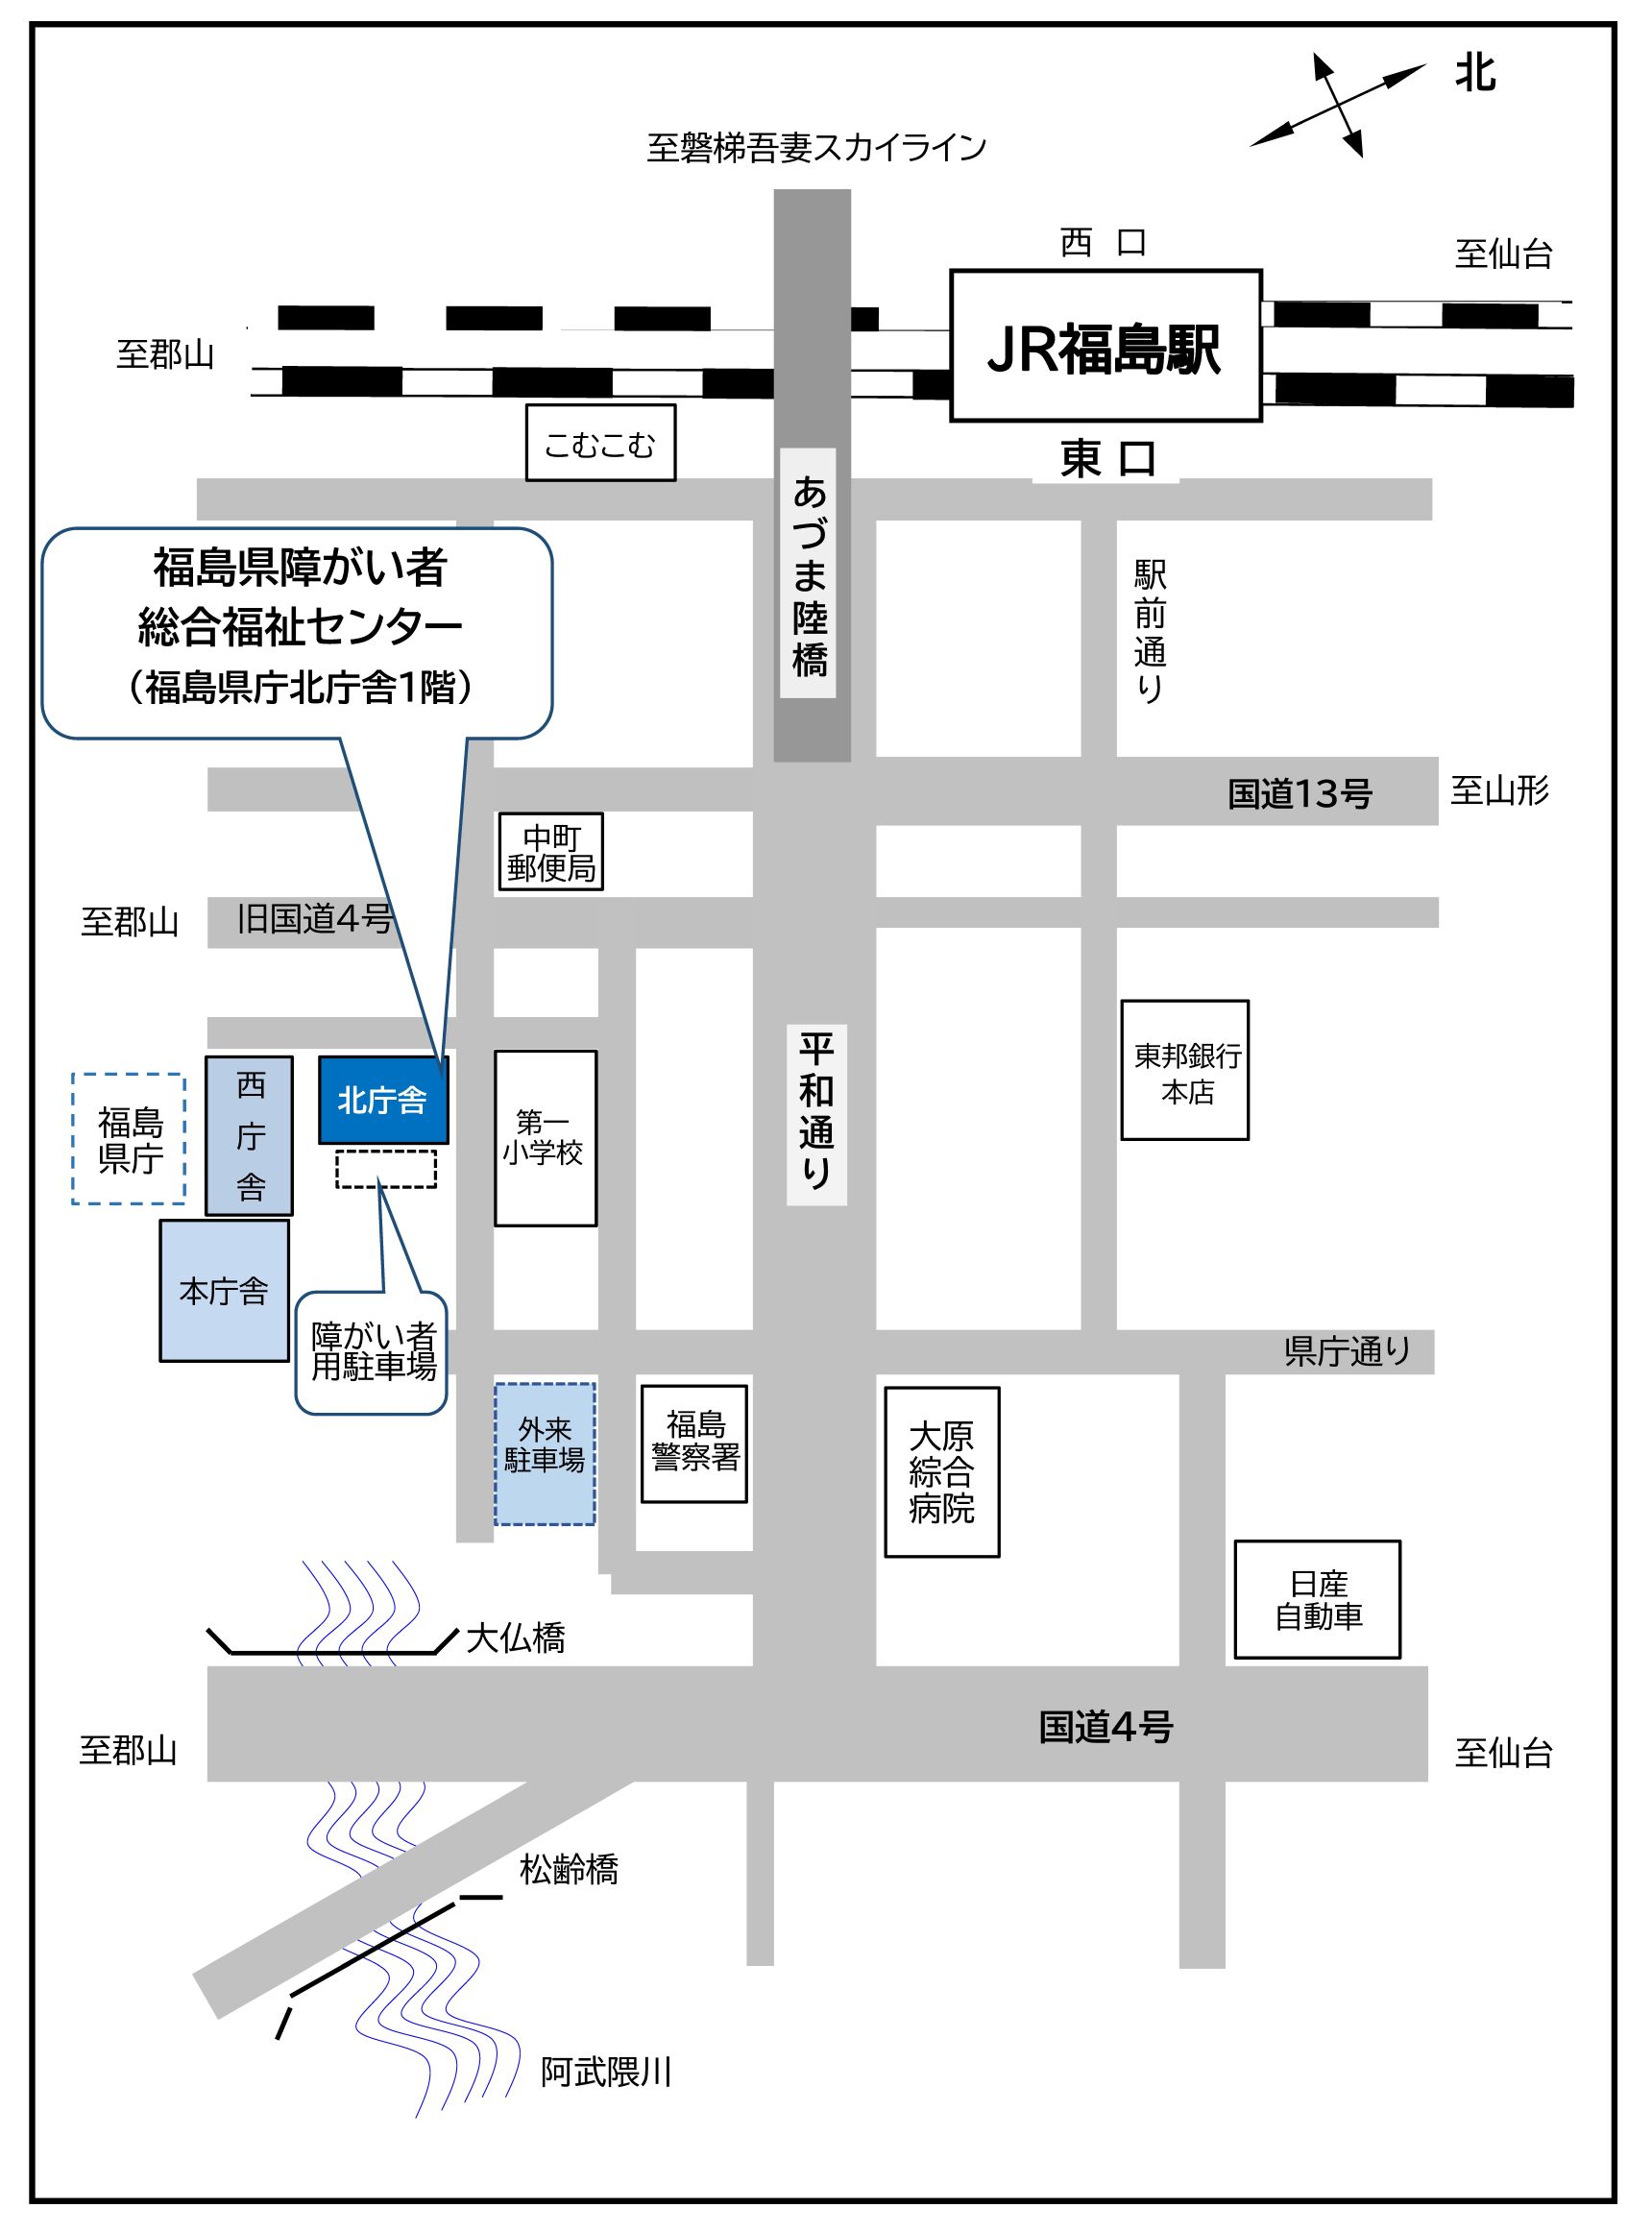 福島県庁の周辺地図です。